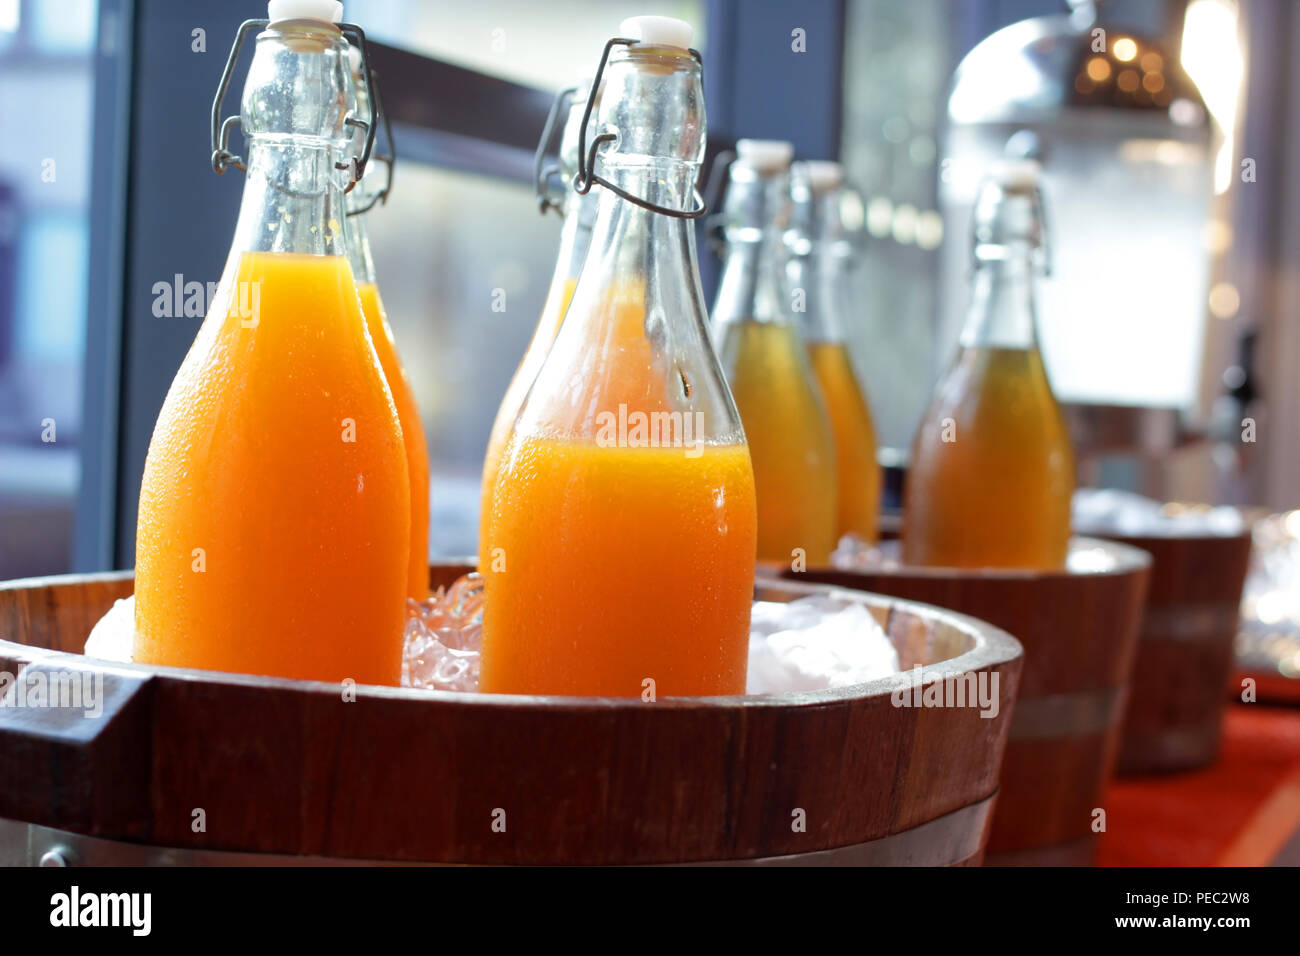 https://c8.alamy.com/comp/PEC2W8/orange-juice-and-water-in-bottles-on-buffet-line-PEC2W8.jpg